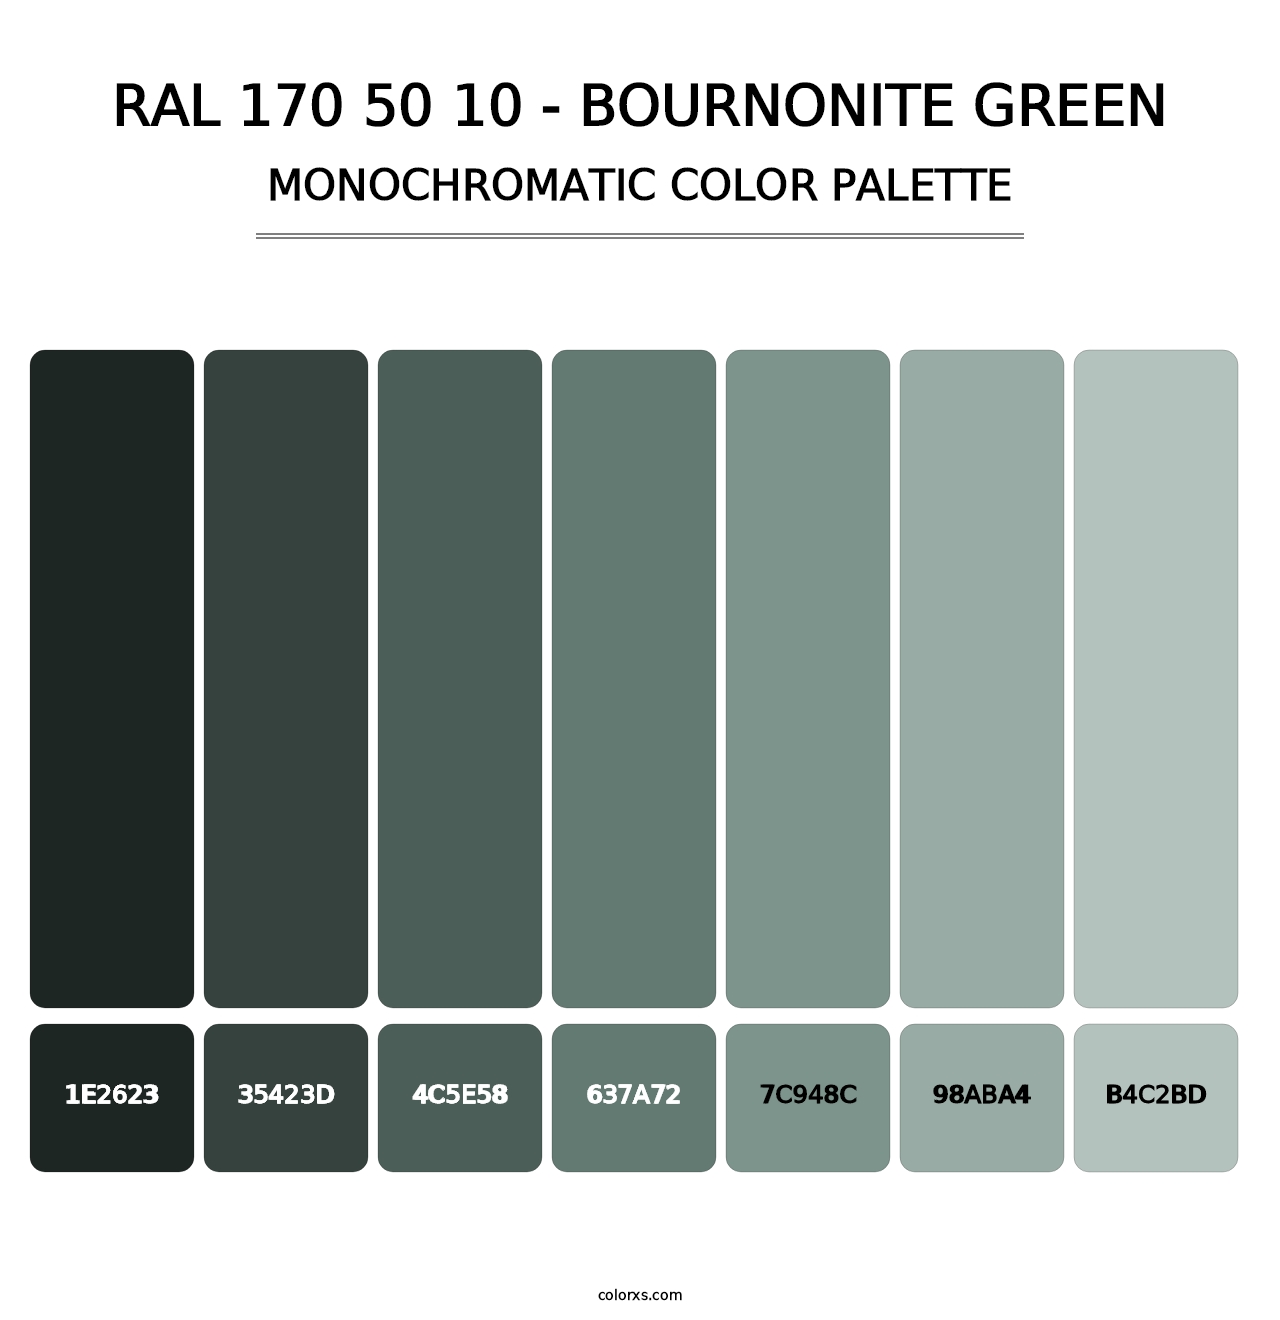 RAL 170 50 10 - Bournonite Green - Monochromatic Color Palette